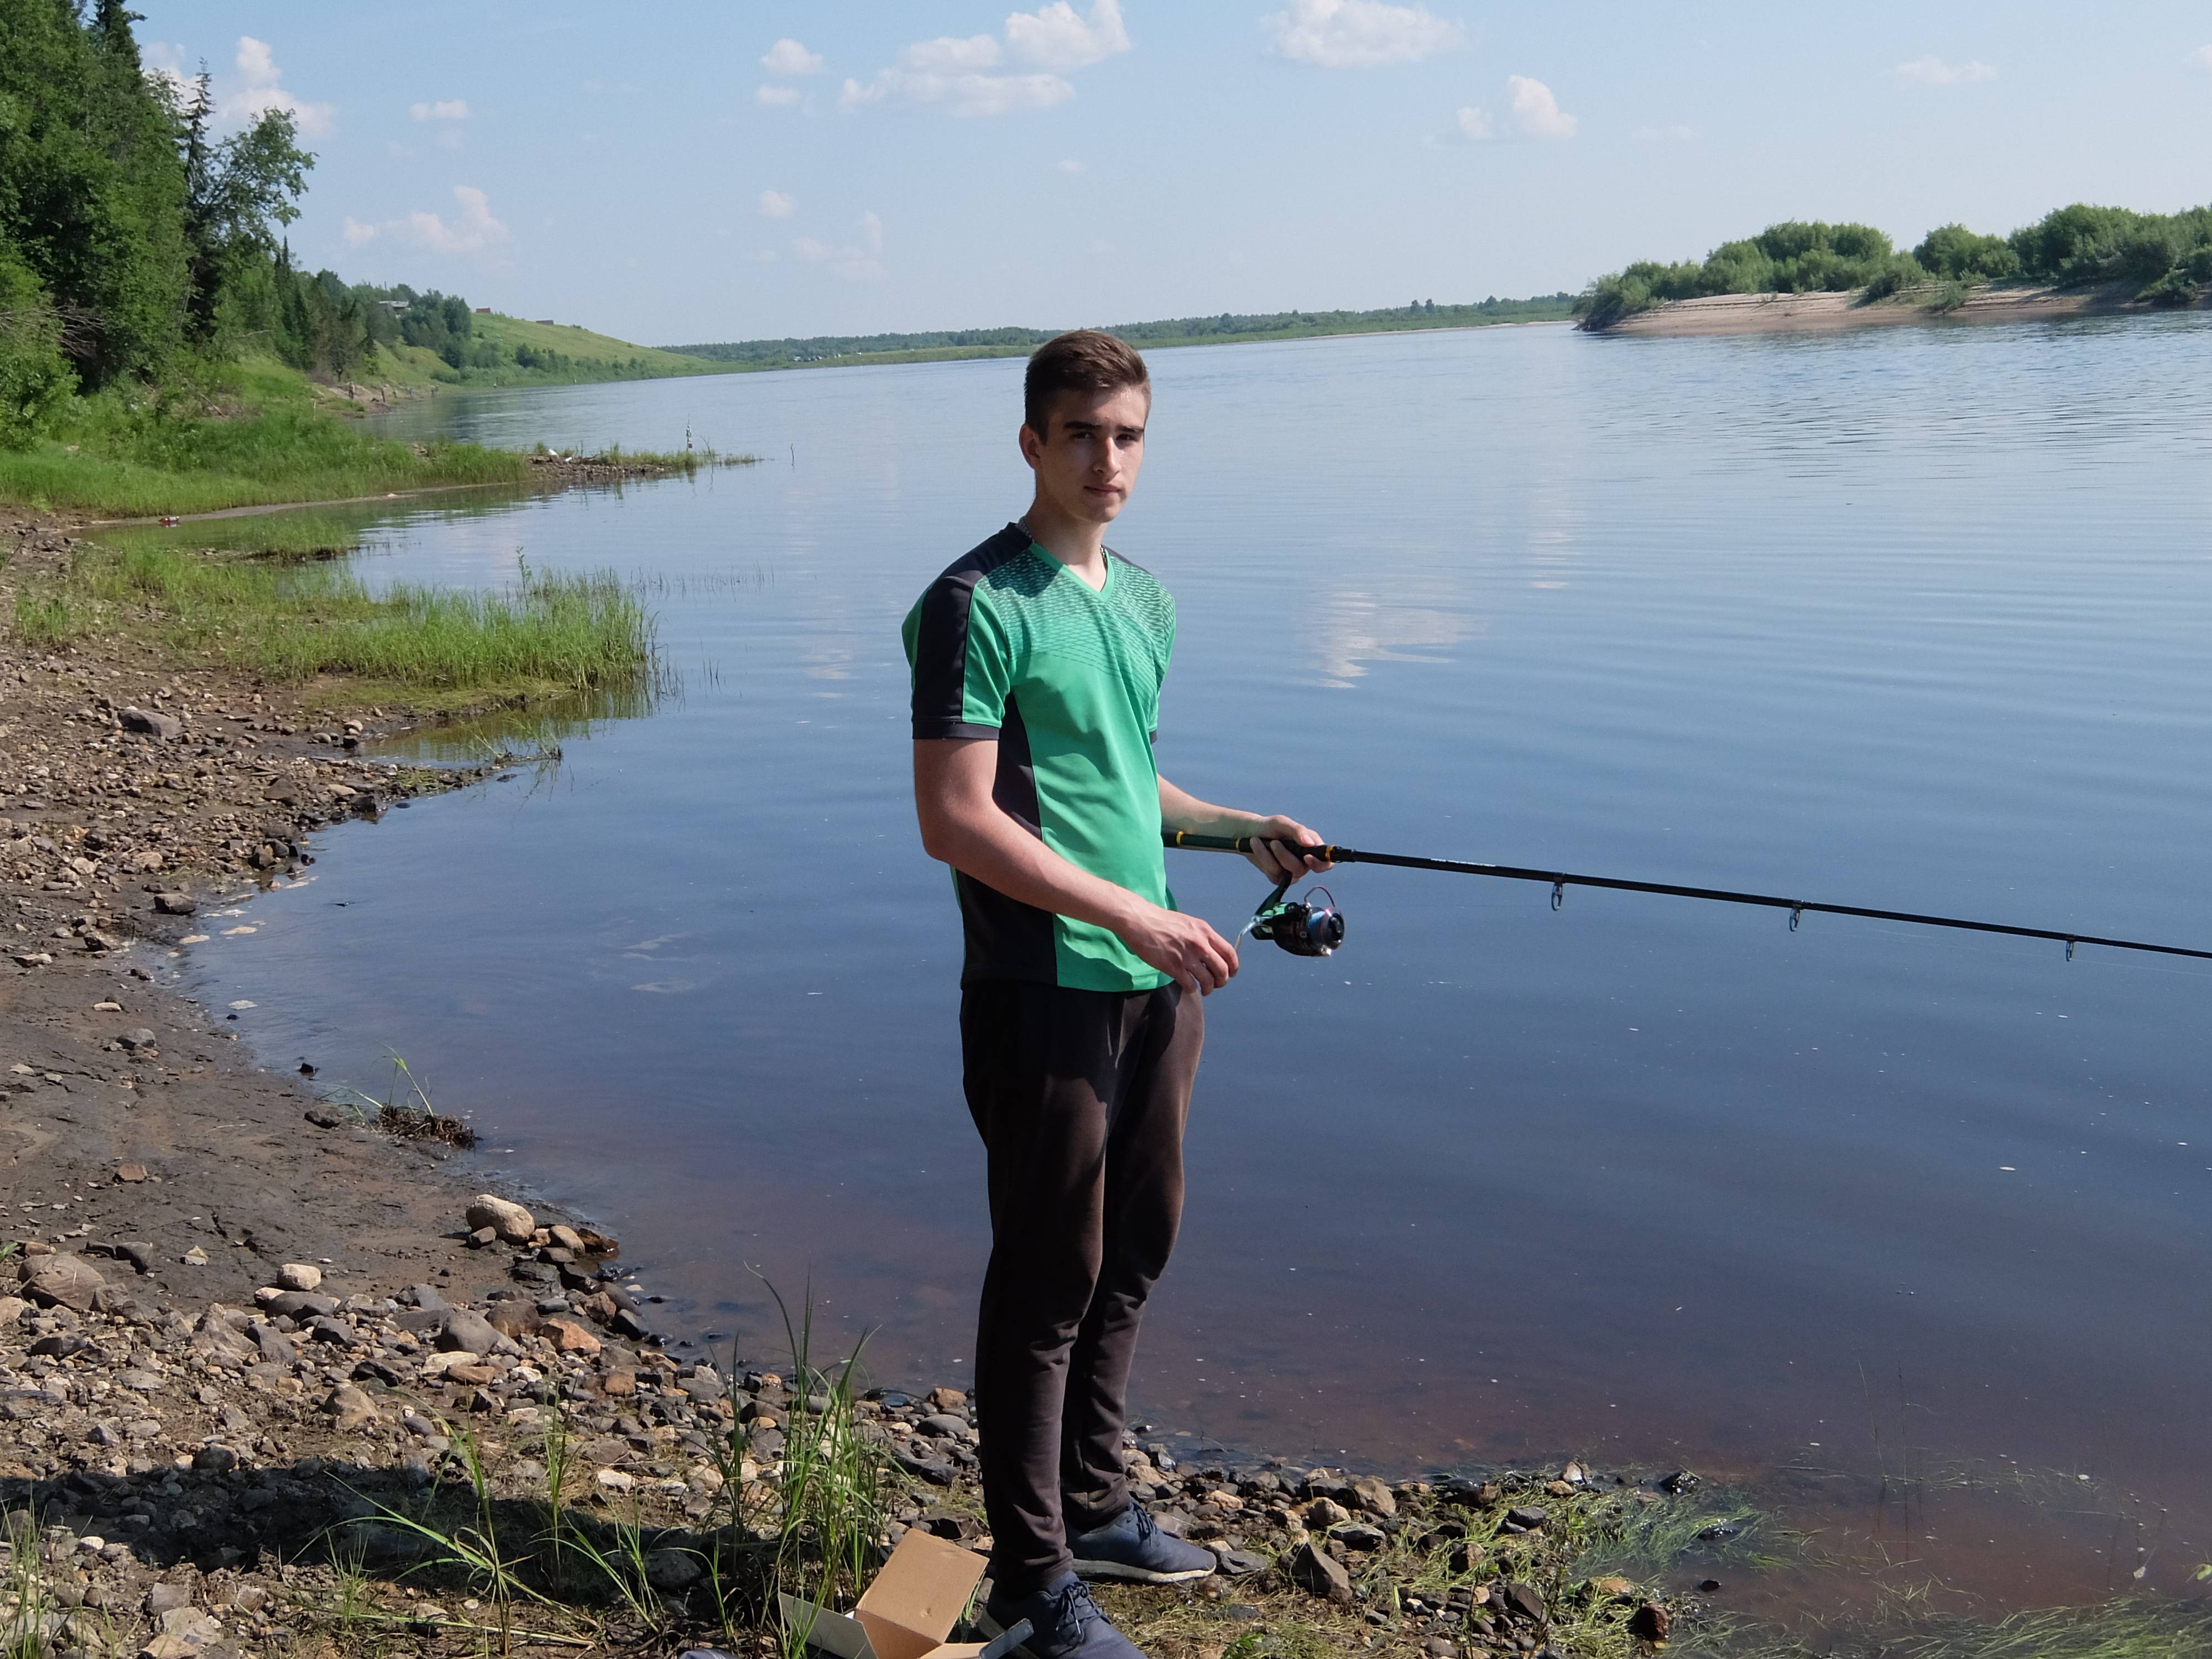 Места для рыбалки в калининградской области – платная и бесплатная рыбалка!